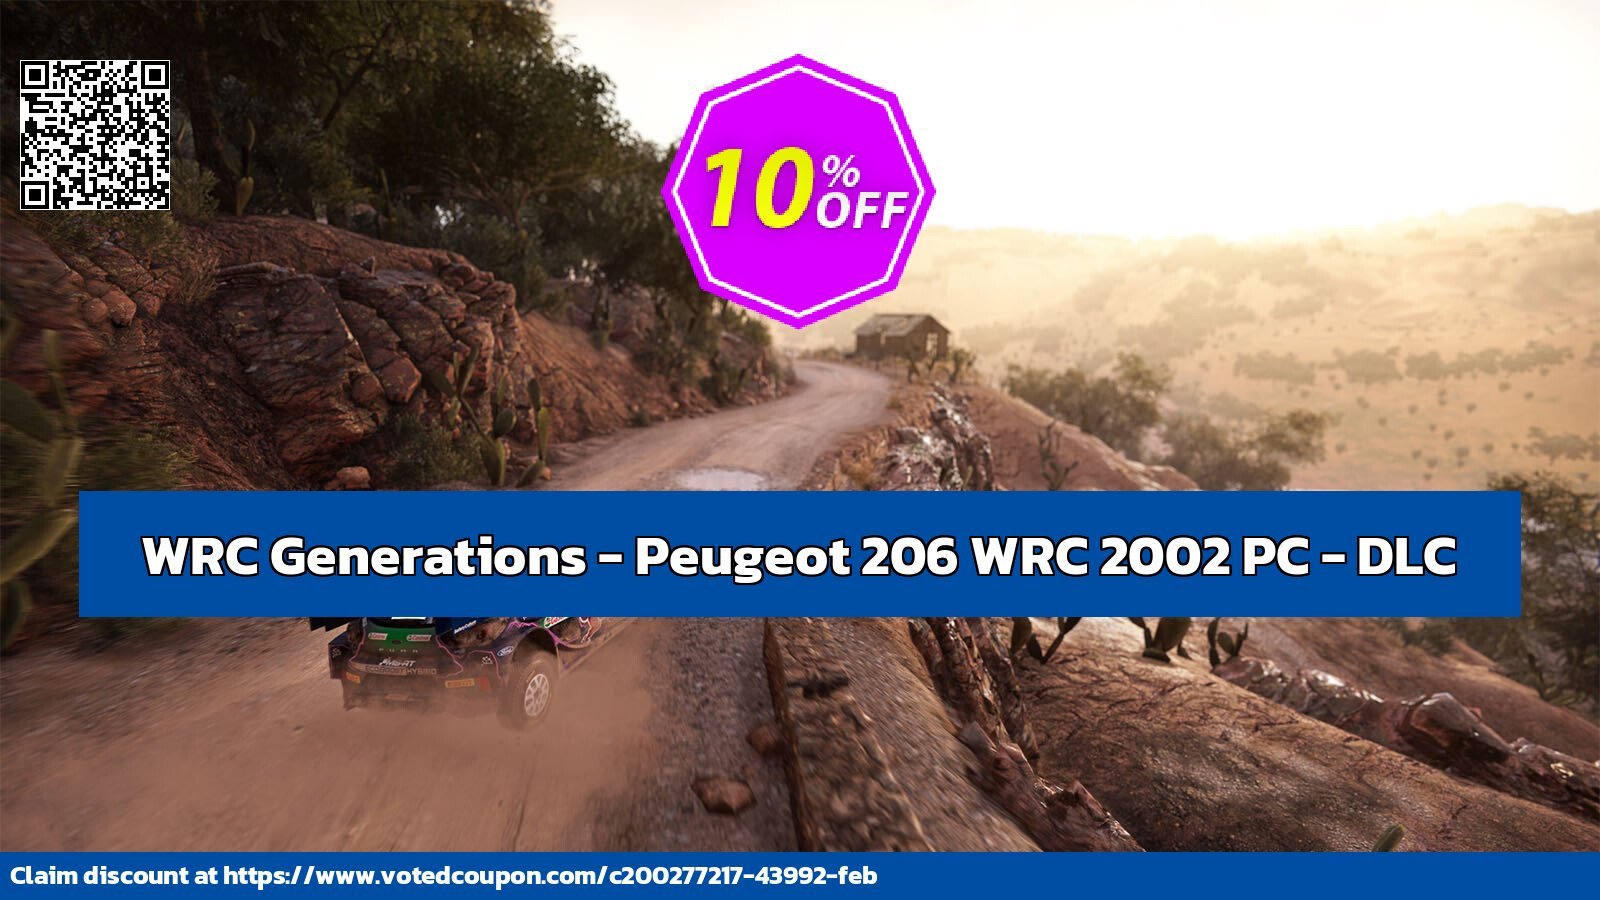 WRC Generations - Peugeot 206 WRC 2002 PC - DLC Coupon, discount WRC Generations - Peugeot 206 WRC 2002 PC - DLC Deal CDkeys. Promotion: WRC Generations - Peugeot 206 WRC 2002 PC - DLC Exclusive Sale offer